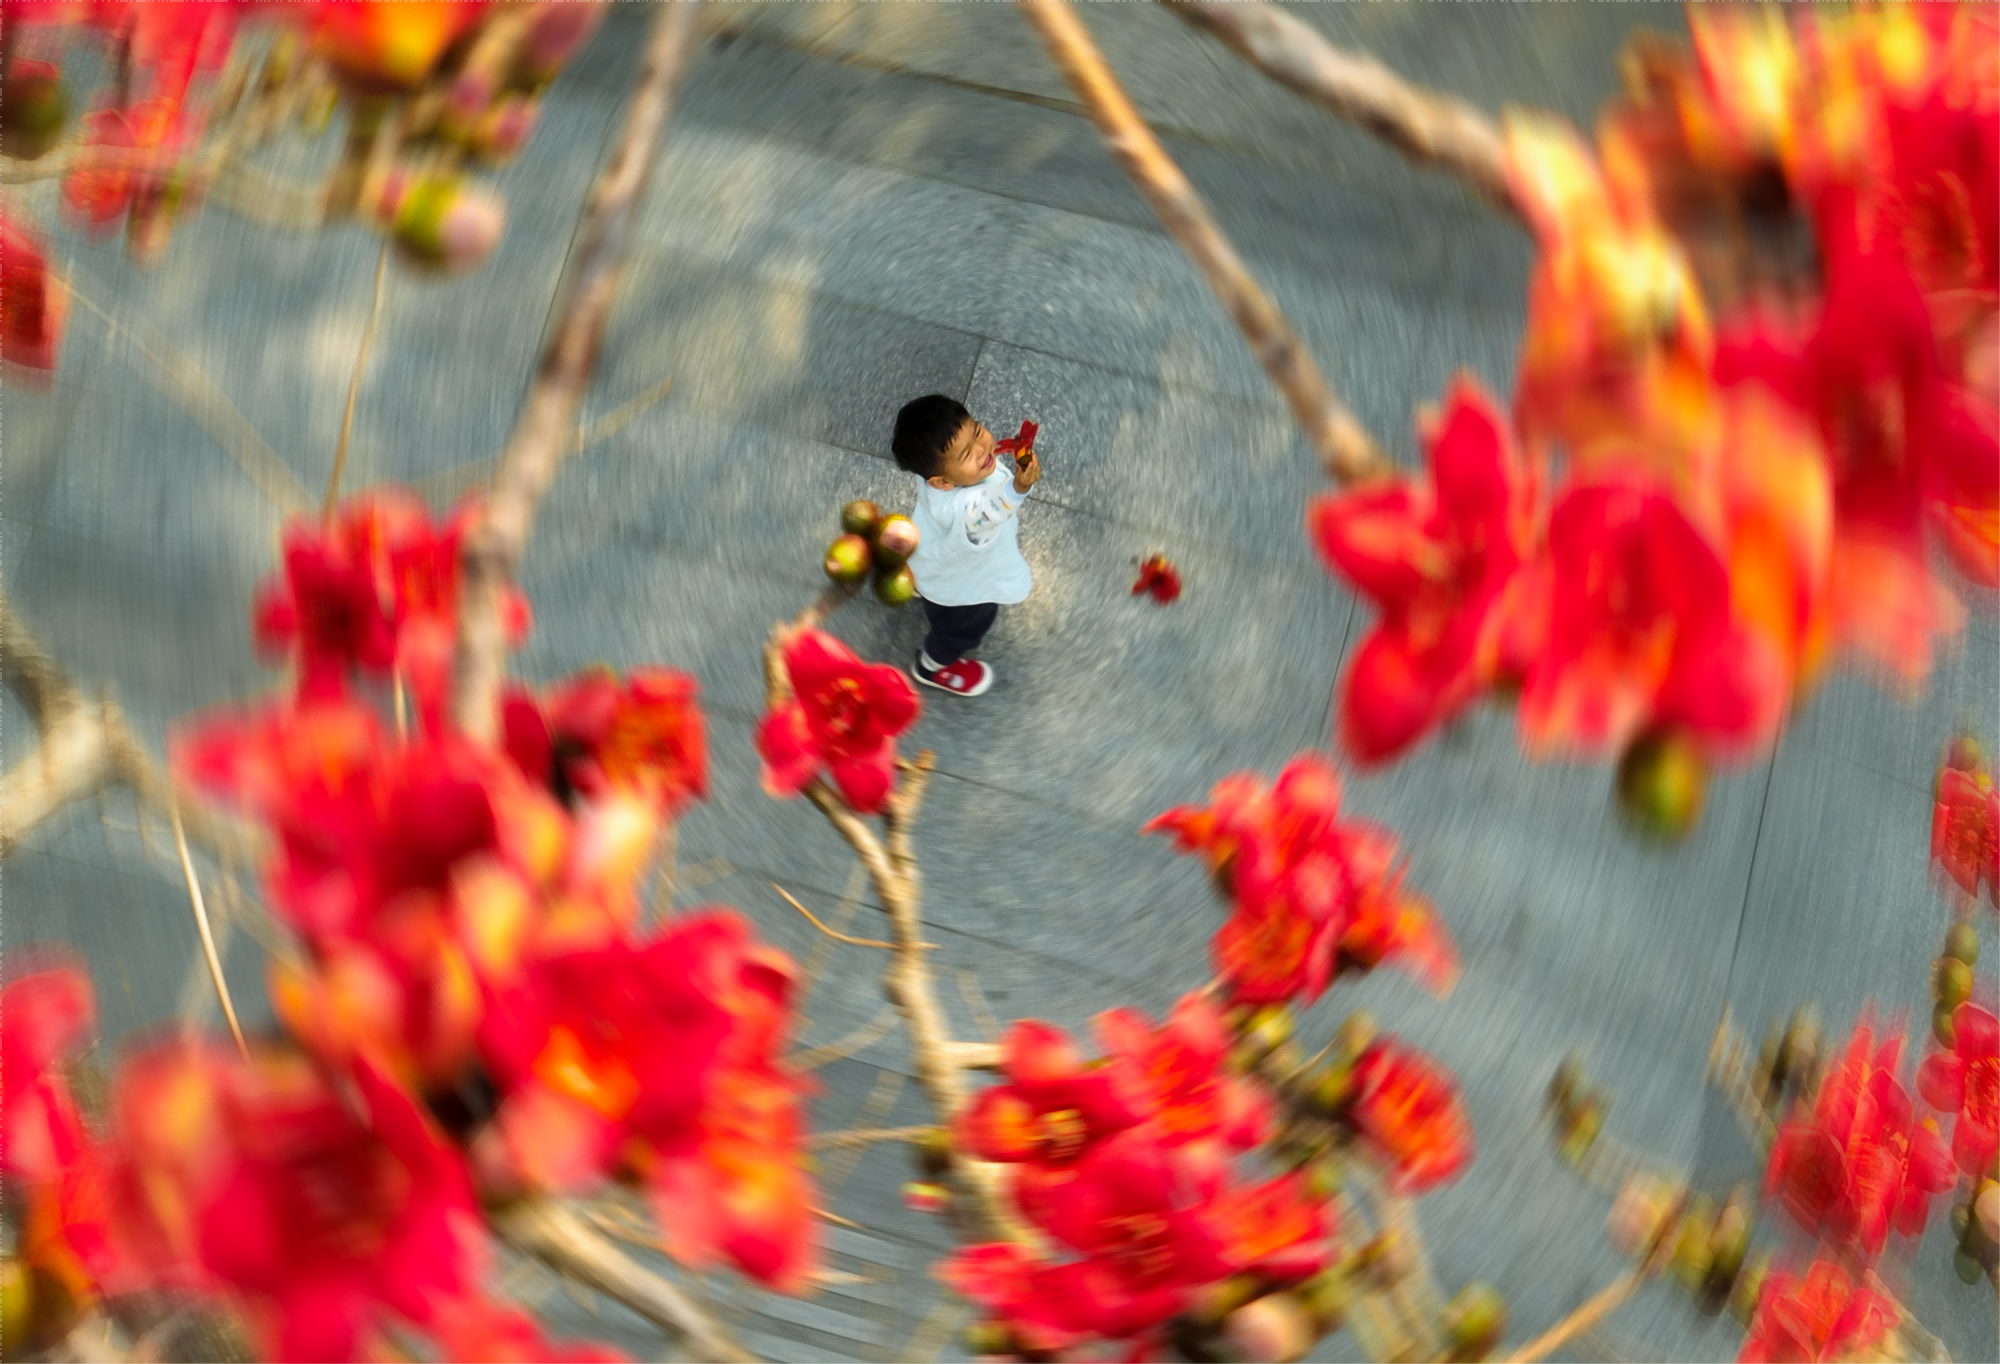 广州市越秀区陵园西路木棉树下，手捧木棉花的小孩随风而舞。钟涌 摄